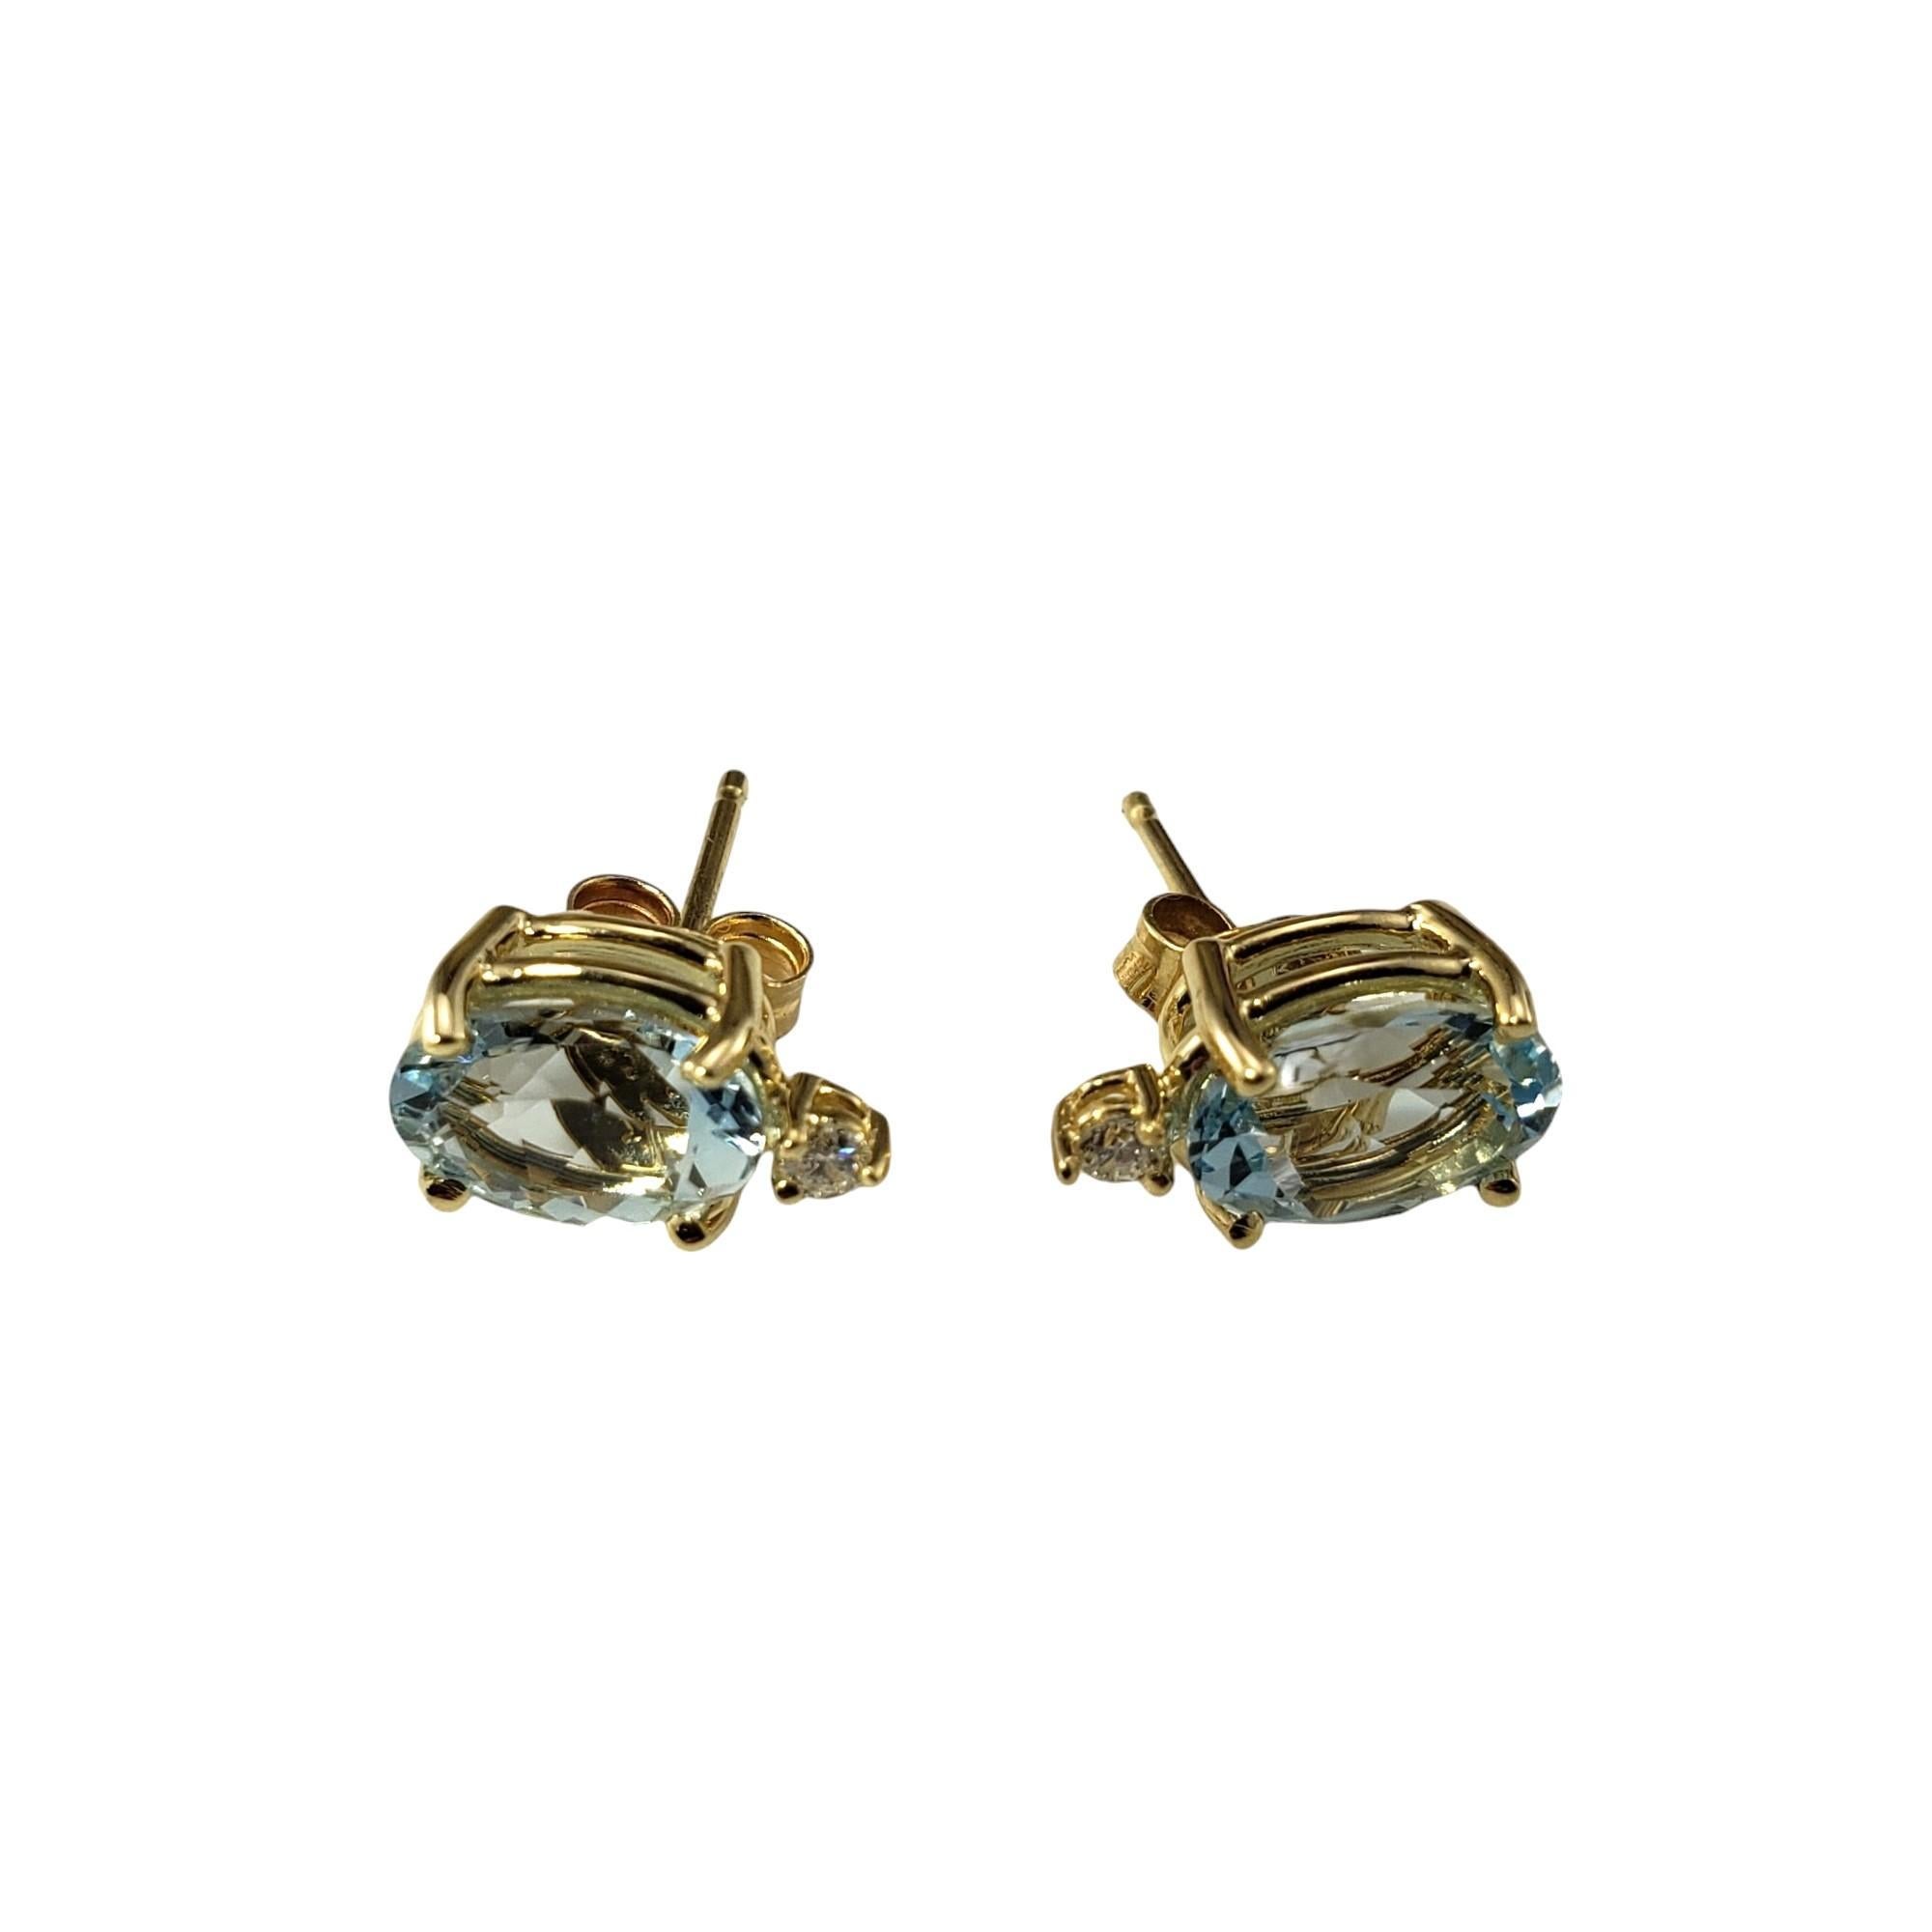 14K Gelbgold Aquamarin und Diamant-Ohrringe

Diese eleganten Ohrringe bestehen aus je einem ovalen Aquamarin (8 mm x 6 mm) und einem runden Diamanten im Brillantschliff, gefasst in klassischem 14 Karat Gelbgold.  

Push-Back-Verschlüsse.

Ungefähres